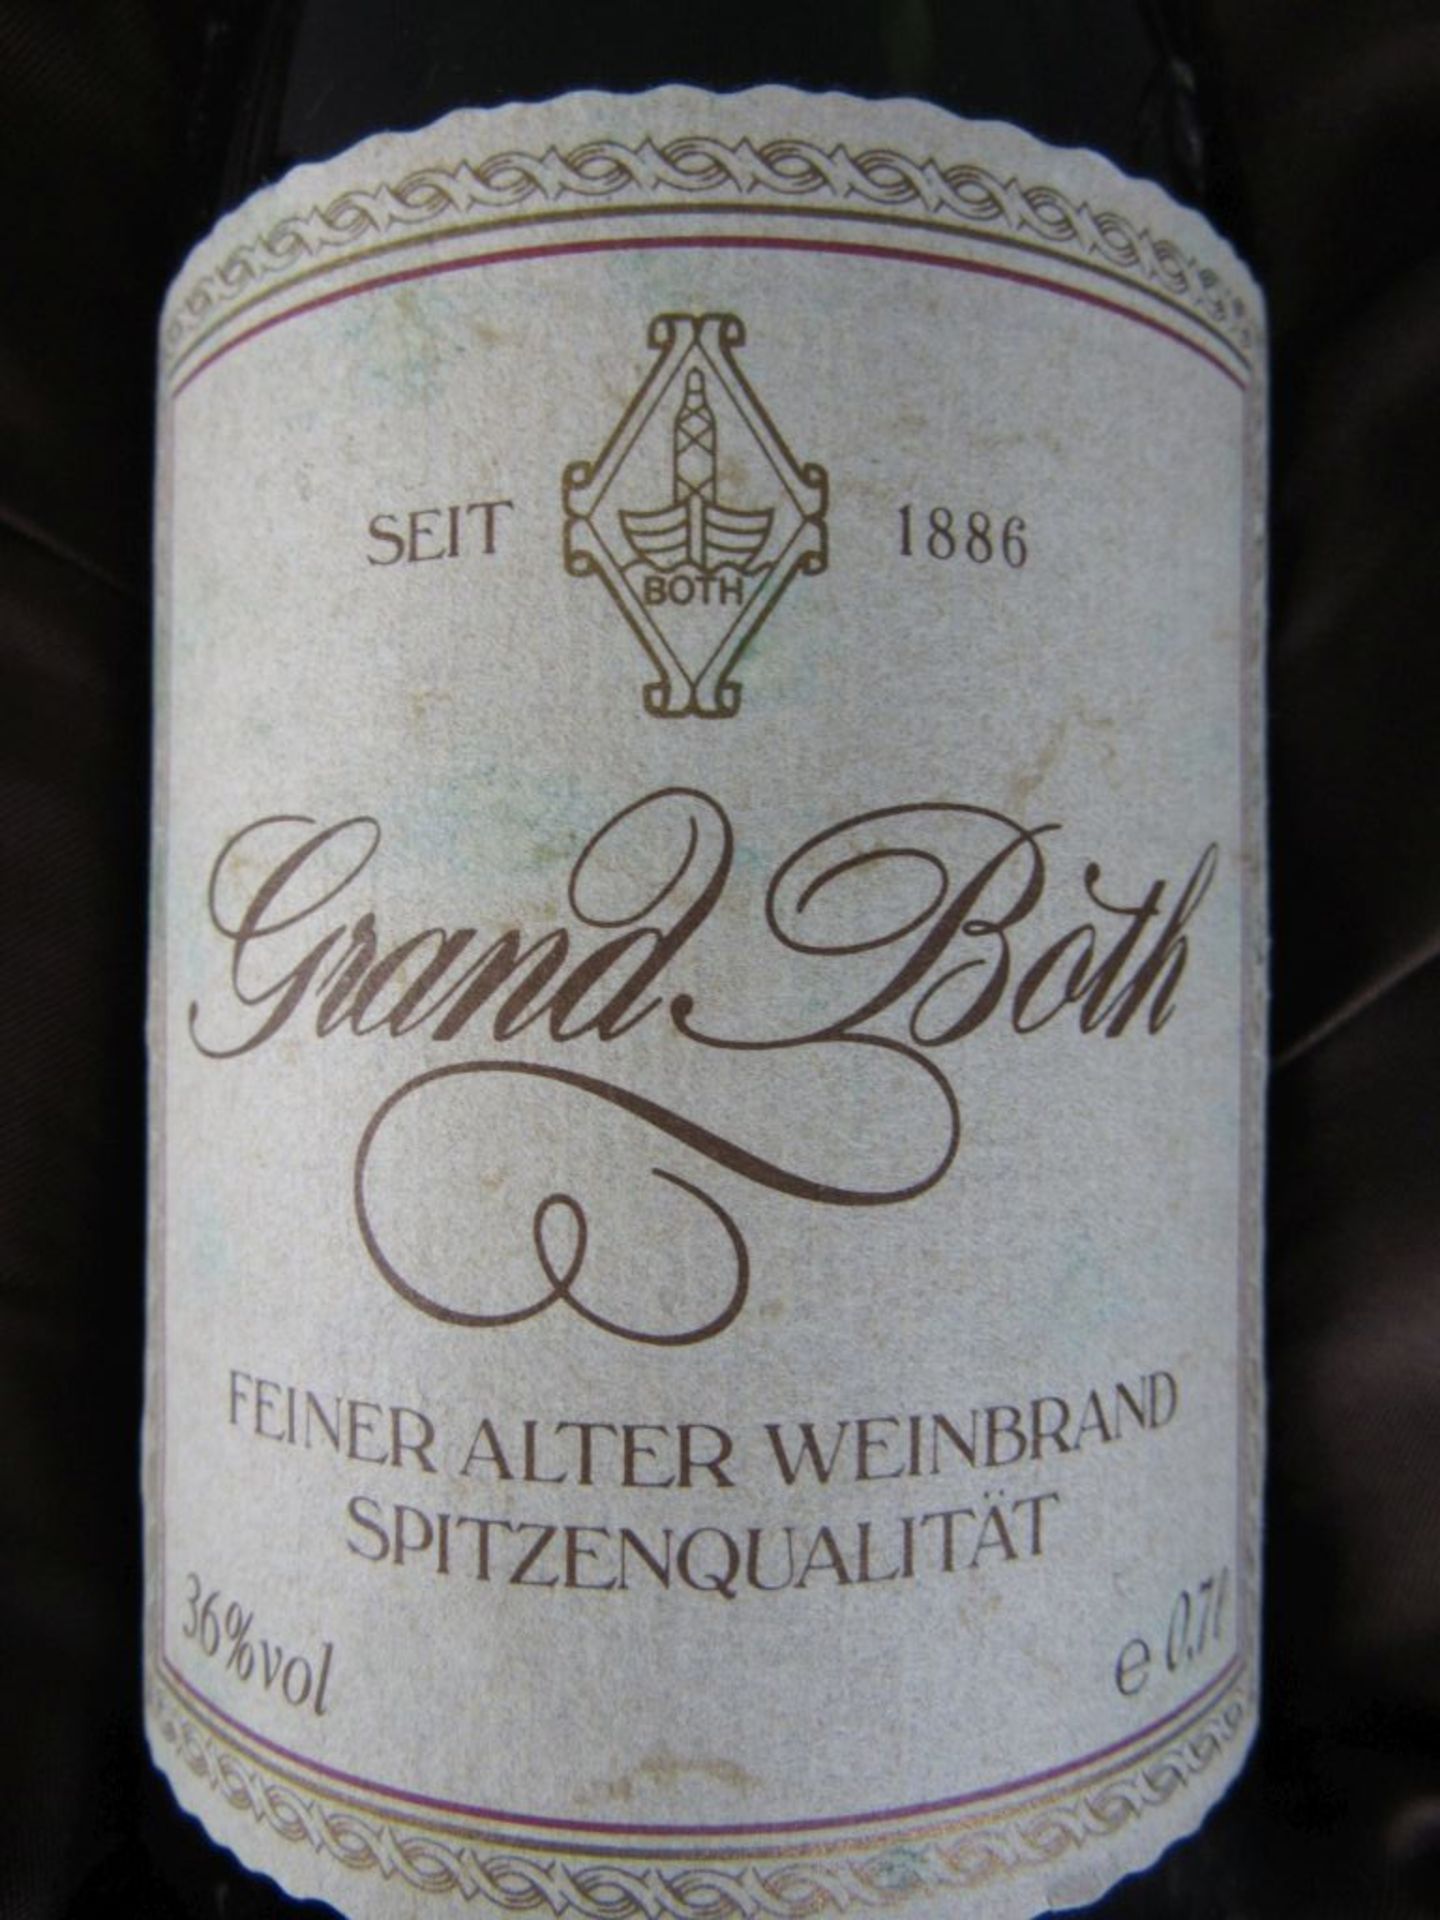 Eine Flasche Weinbrand in Schatulle Grand Both + 3 Flaschen Wein - Image 3 of 7